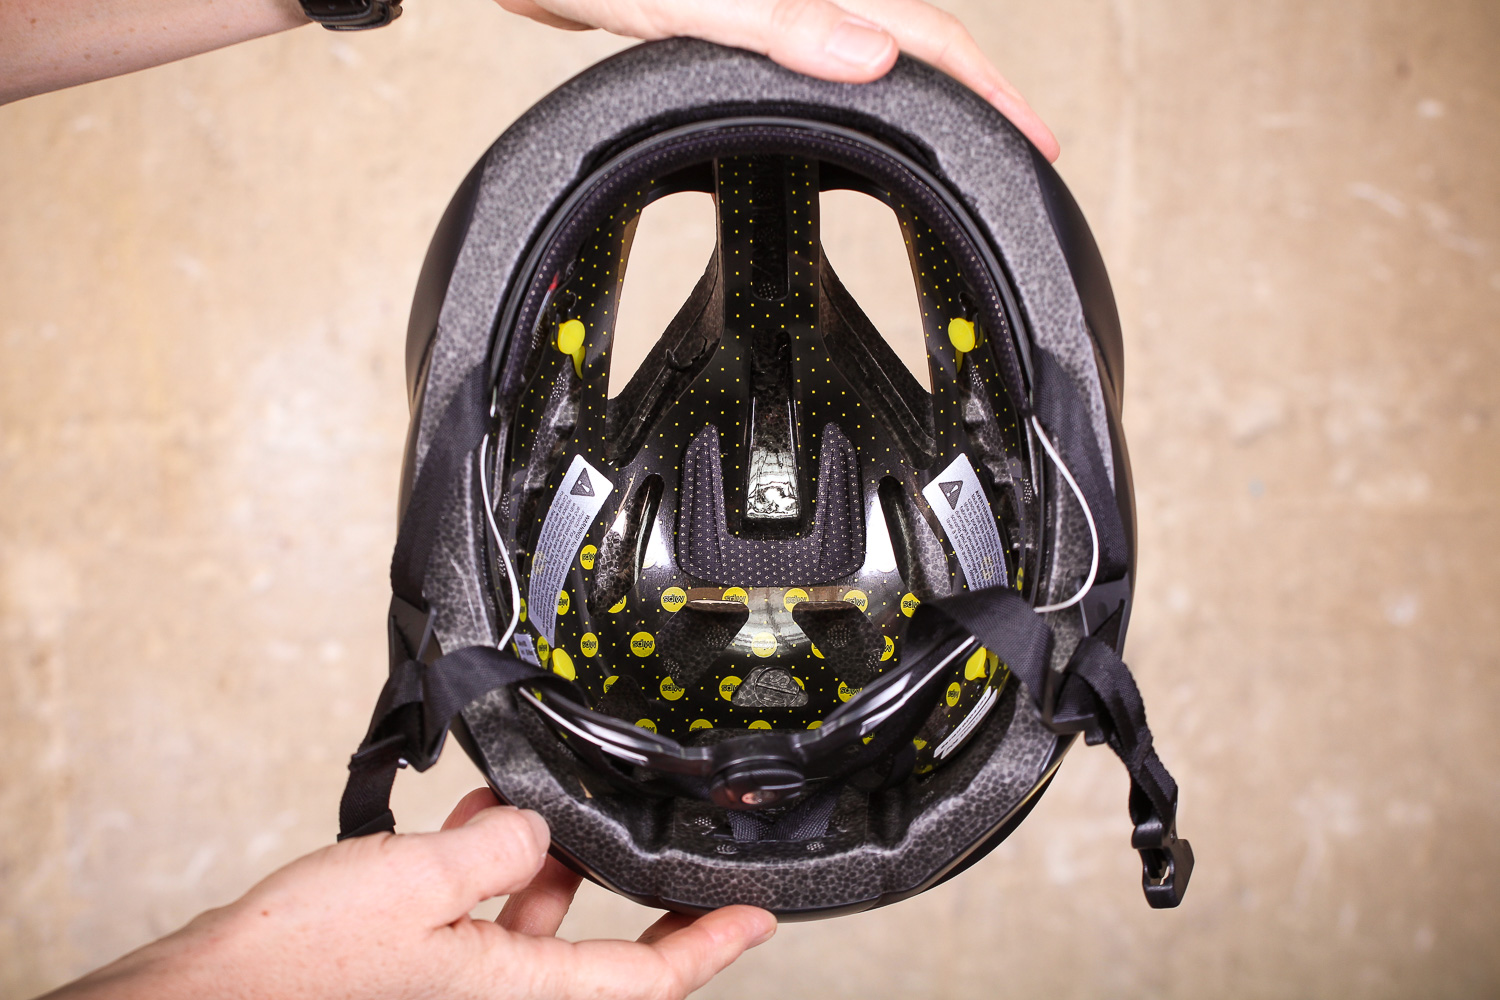 oakley aro5 helmet review